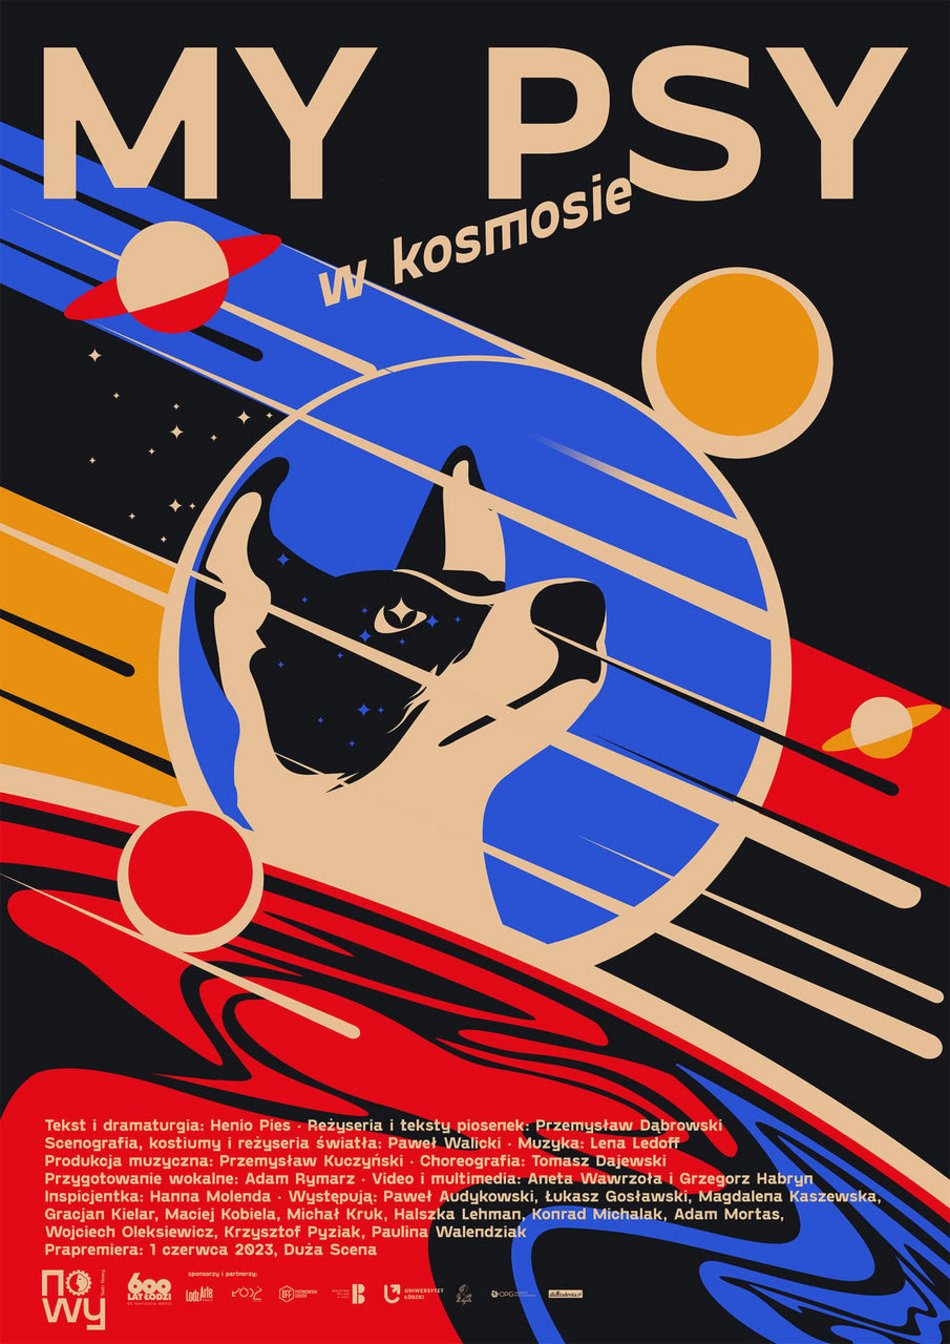 Spektakl "My, psy w kosmosie" w Teatrze Nowym w Łodzi, plakat przedstawiający psa w stroju astronauty